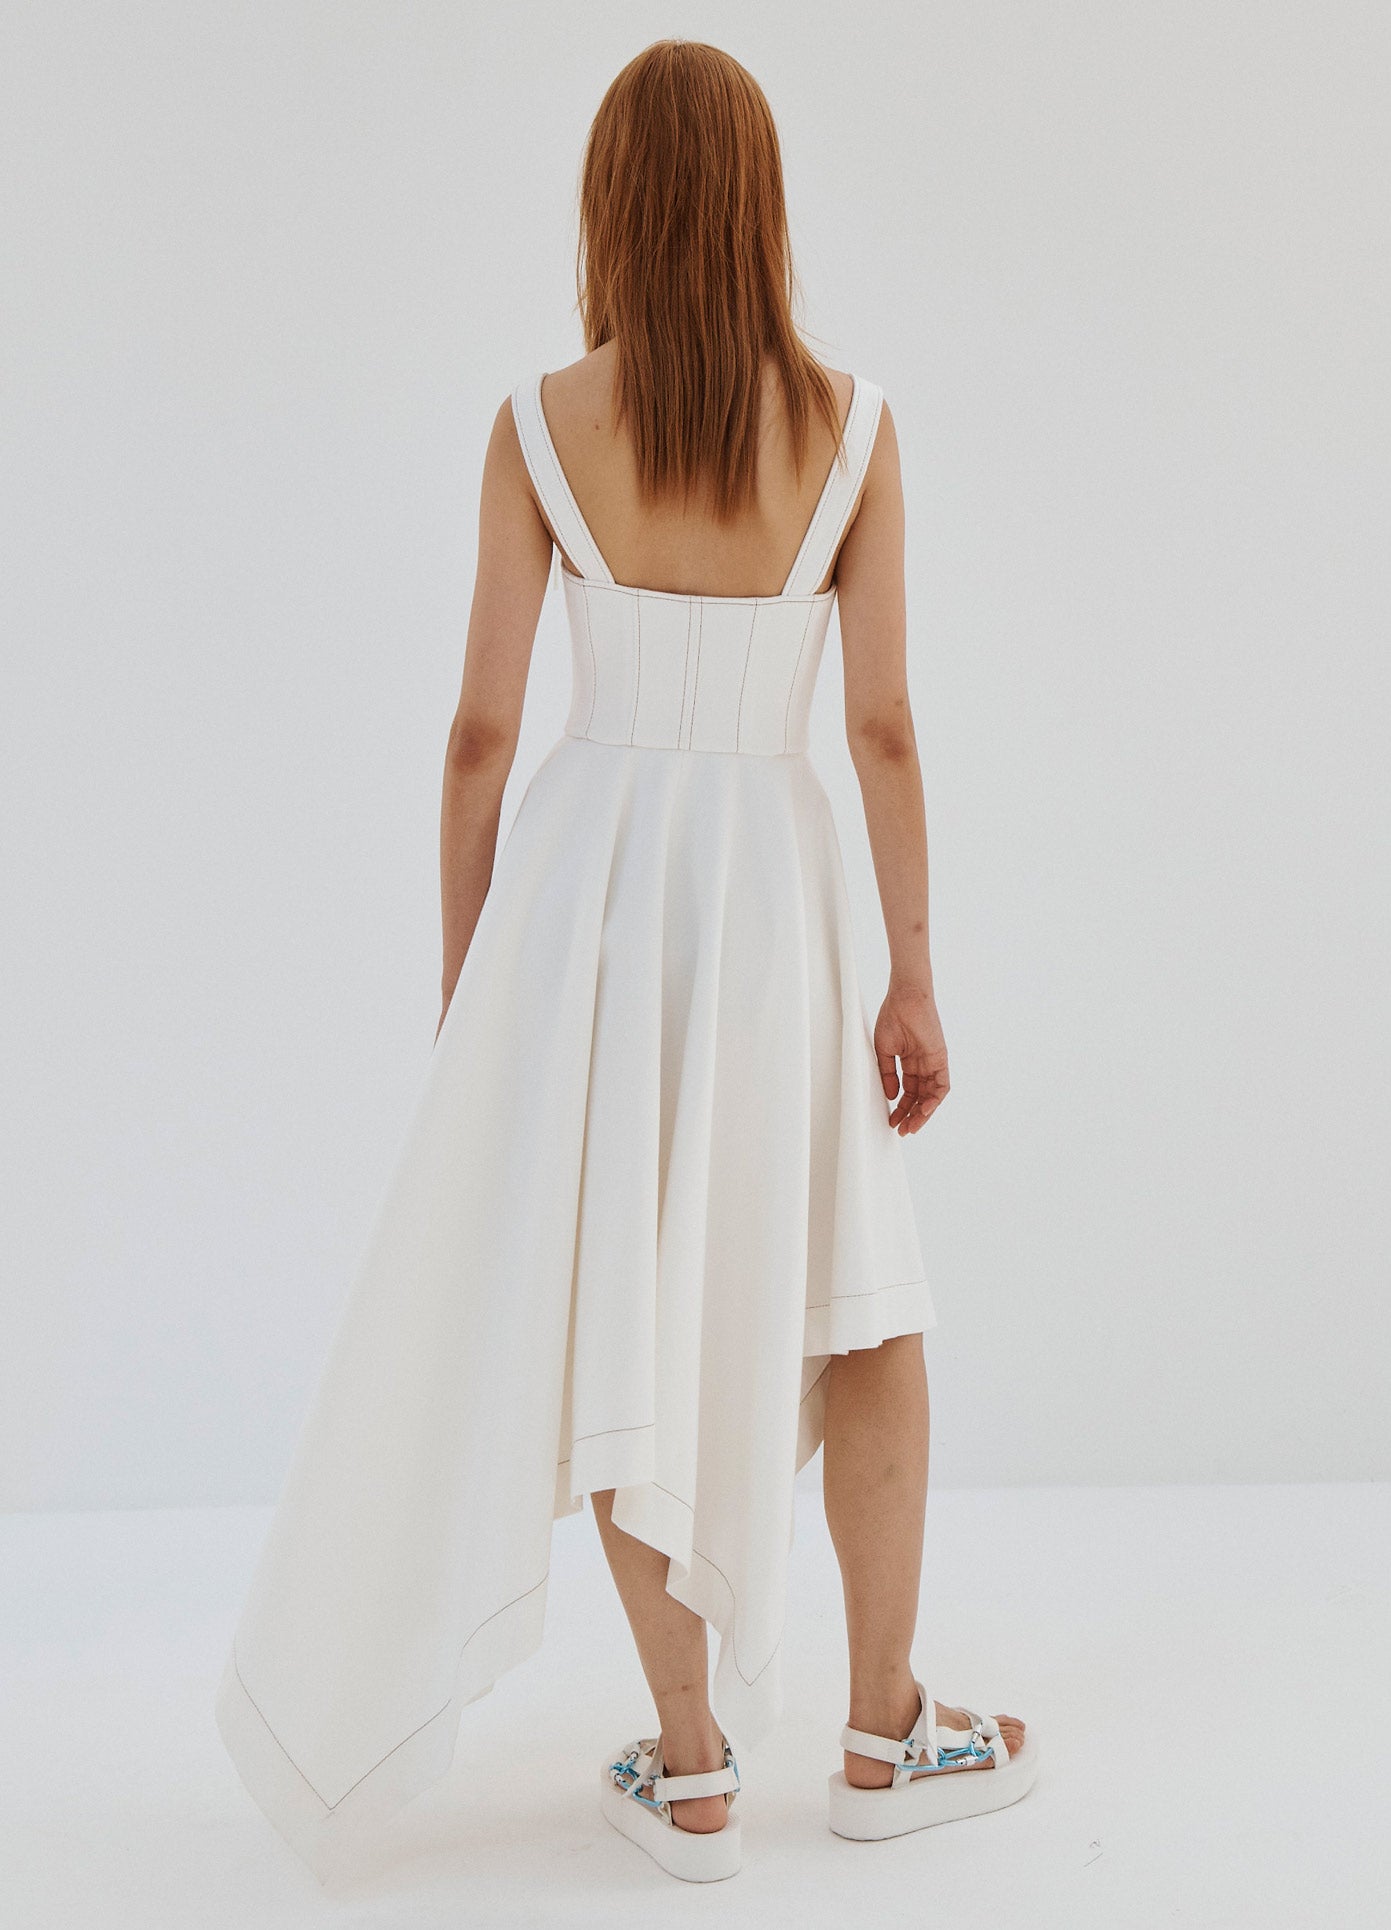 MONSE Laced Front Sleeveless Denim Dress in White on Model Full Back View